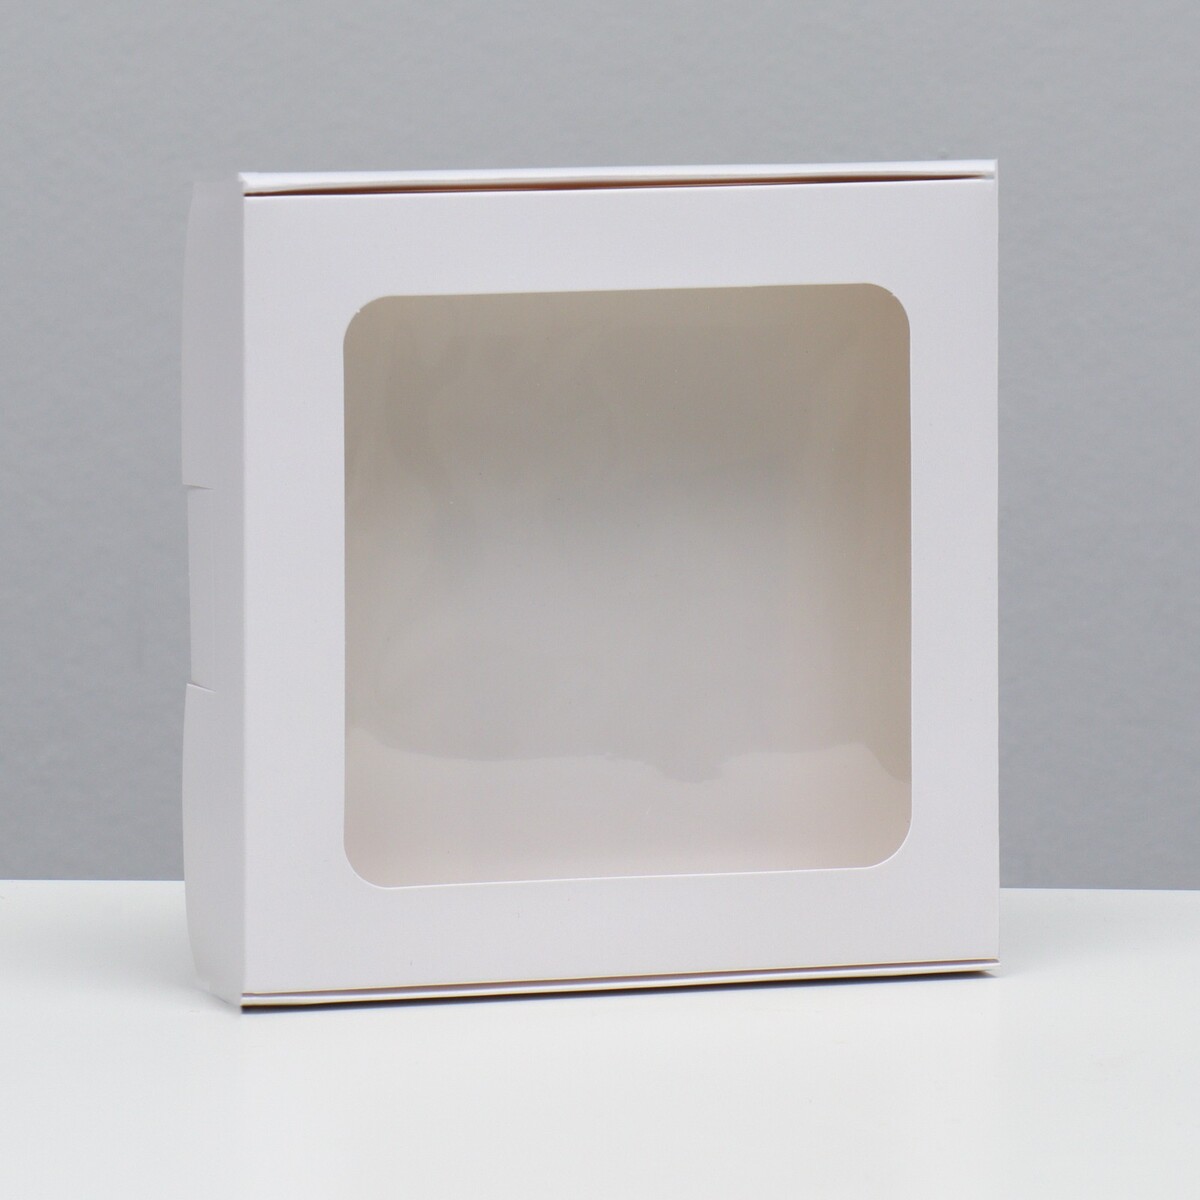 Коробка самосборная, белая, 16 х 16 х 3 см коробка самосборная белая 13 х 13 х 3 см